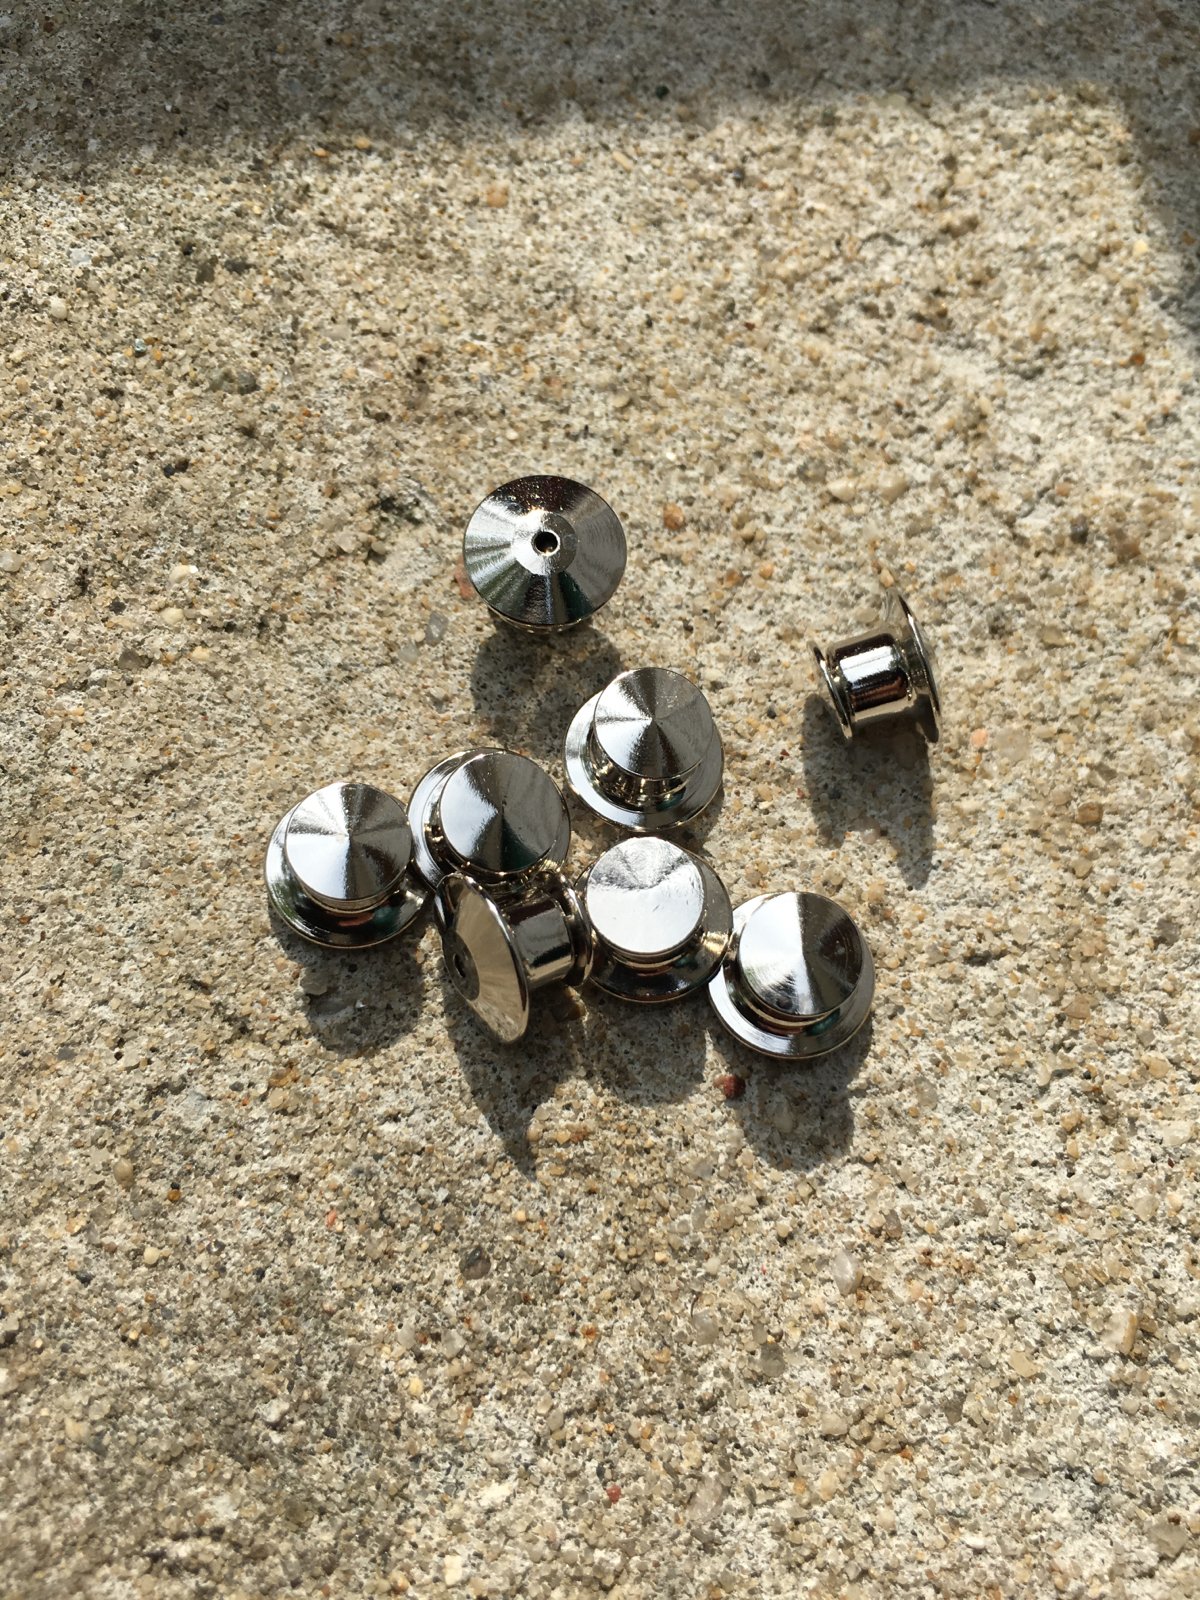 Spring-Loaded Metal Locking Pin Back x2